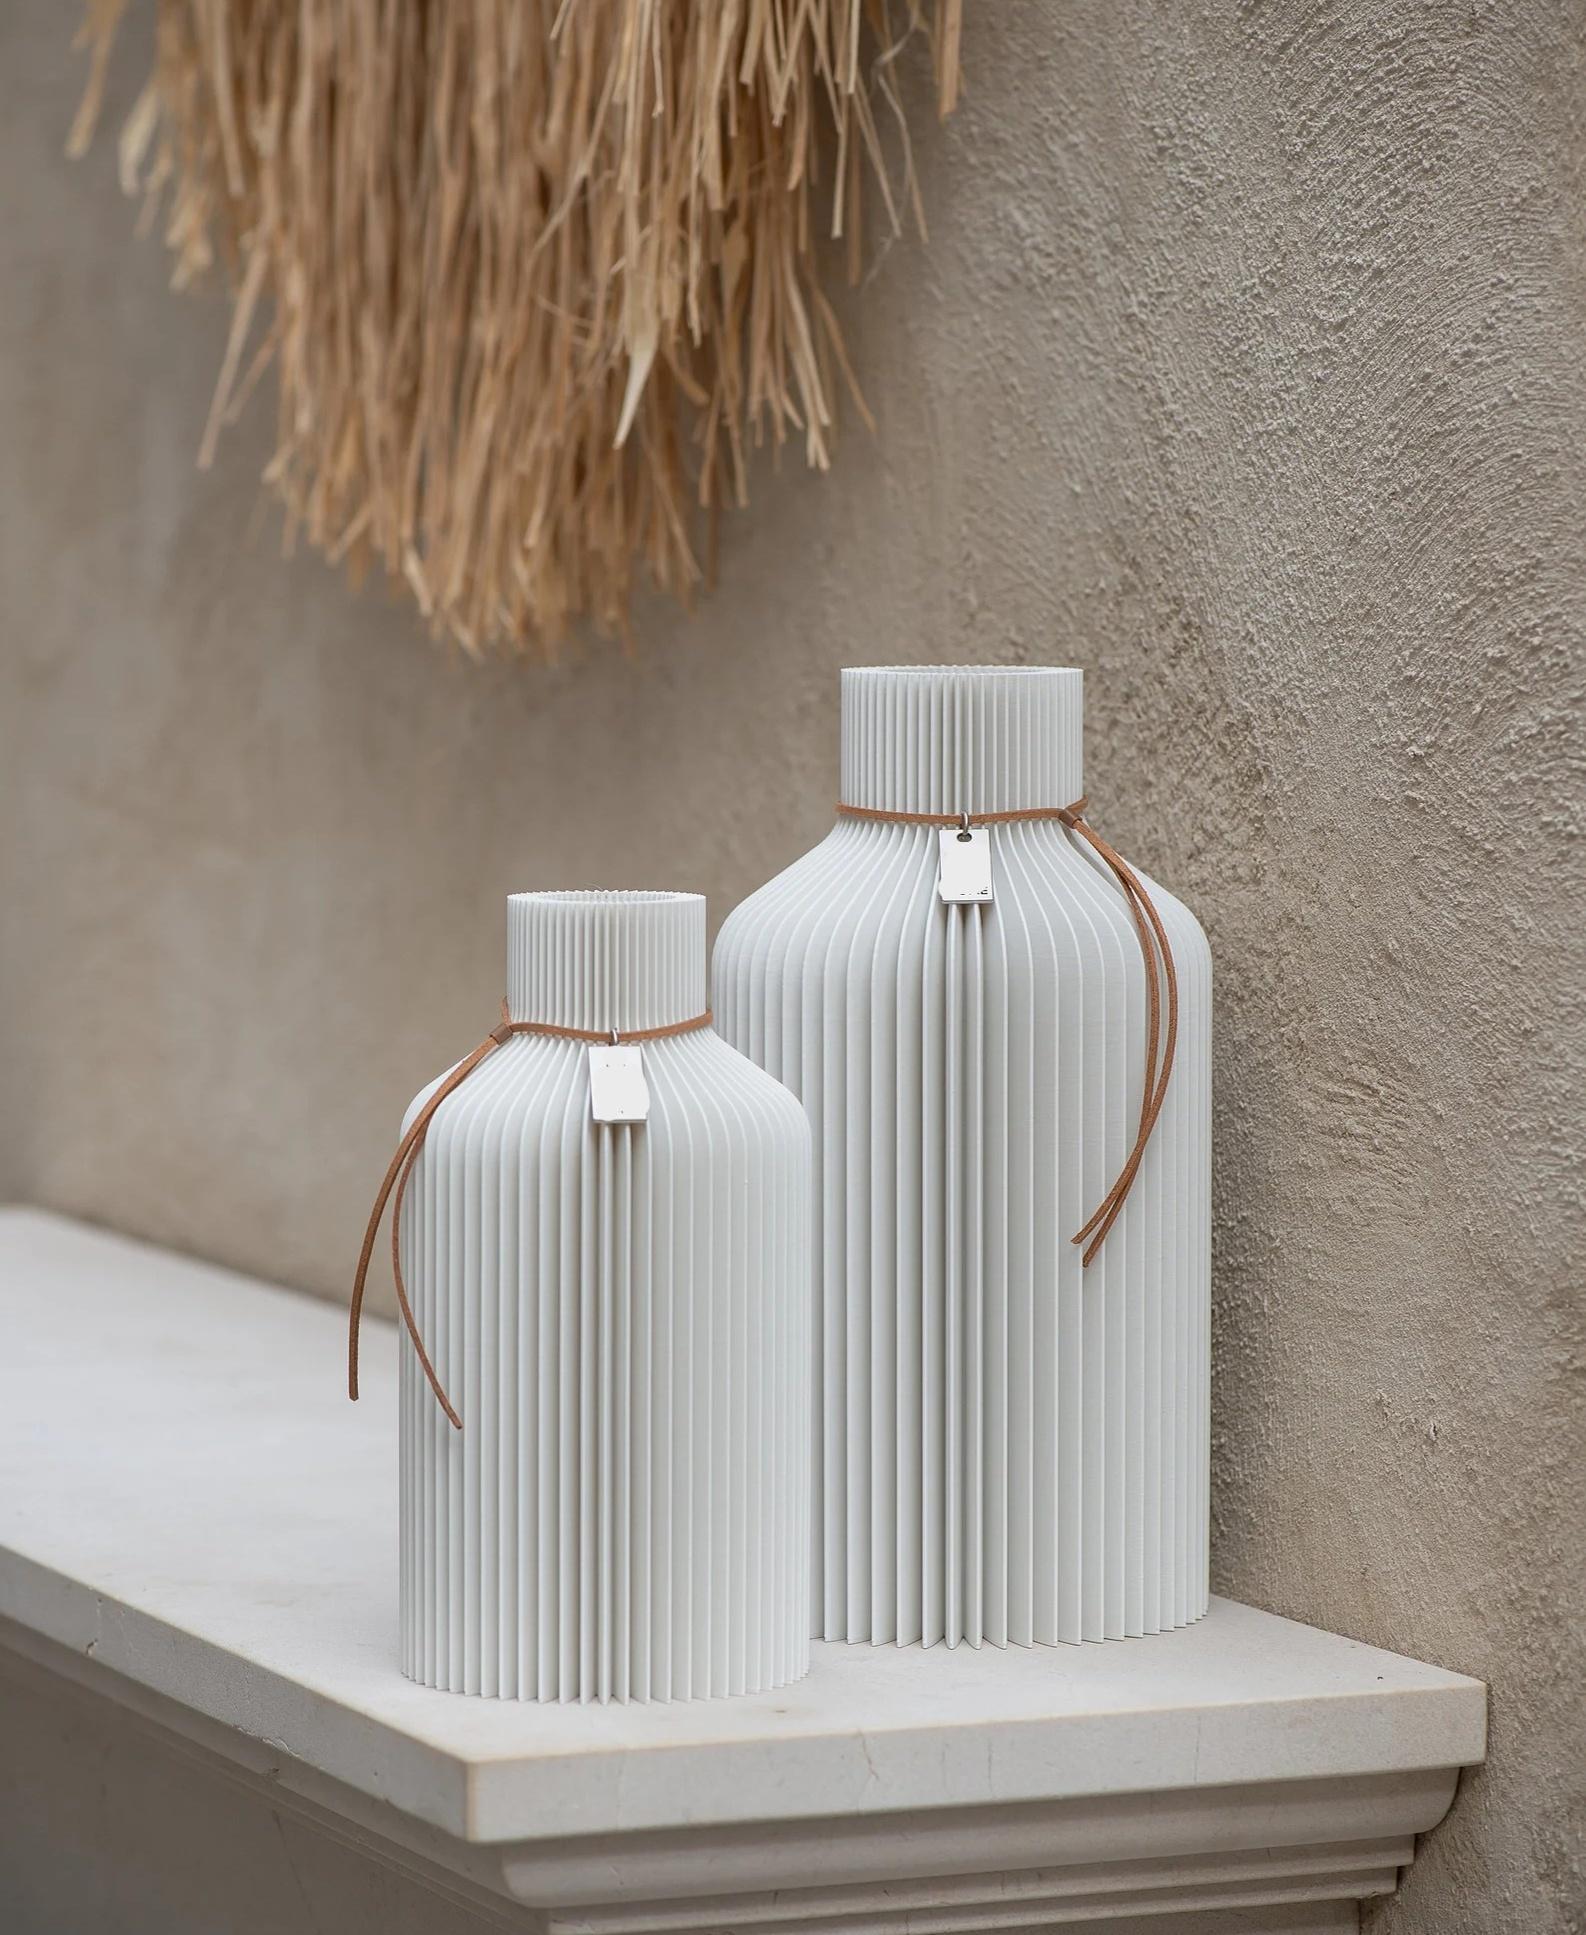 The Bottle - A Botany Chic Vase 3d model